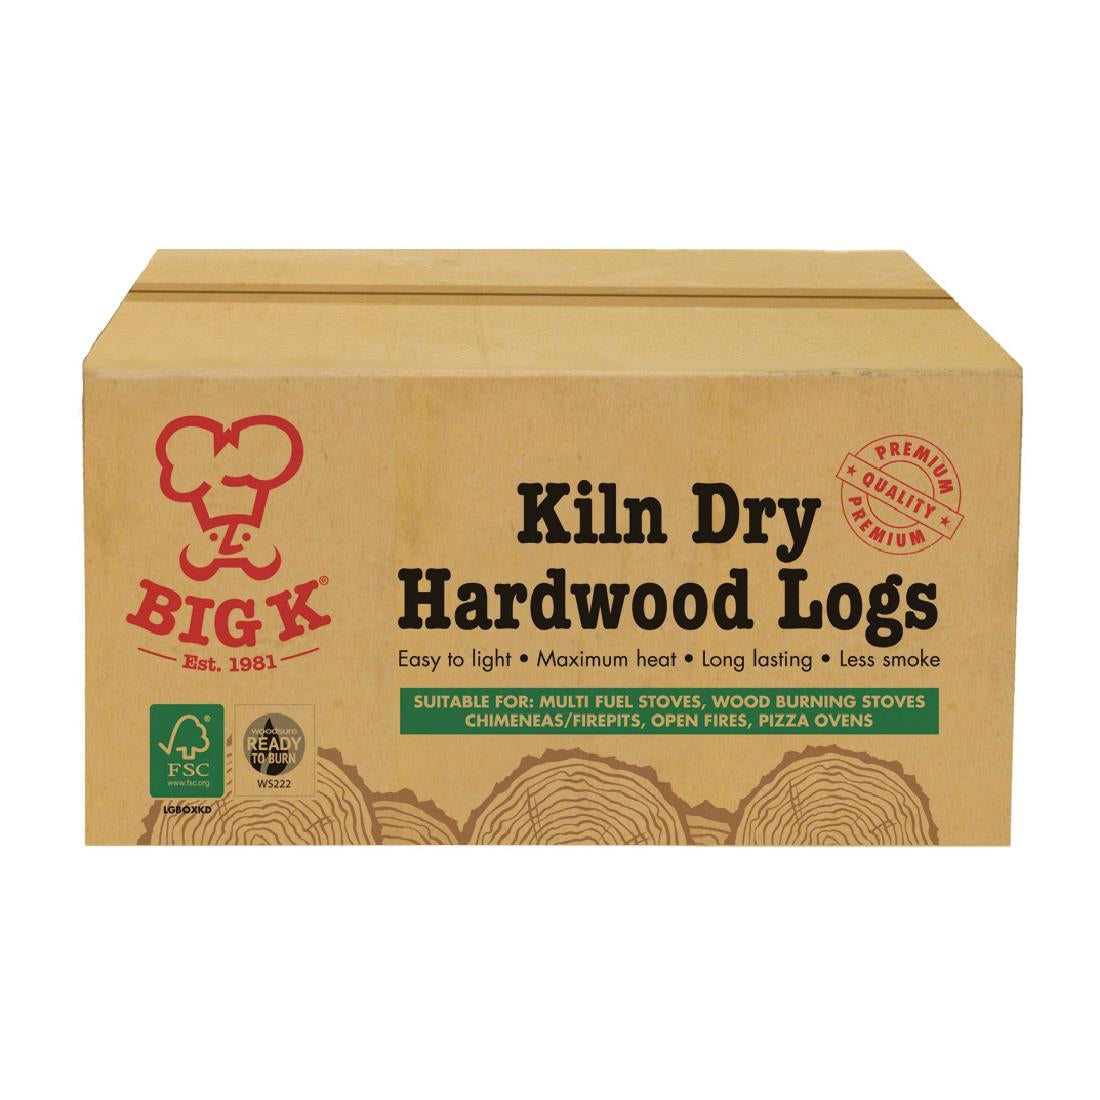 Big K Kiln Dry Hardwood Logs FSC Box 8Kg LGBOXKD JD Catering Equipment Solutions Ltd